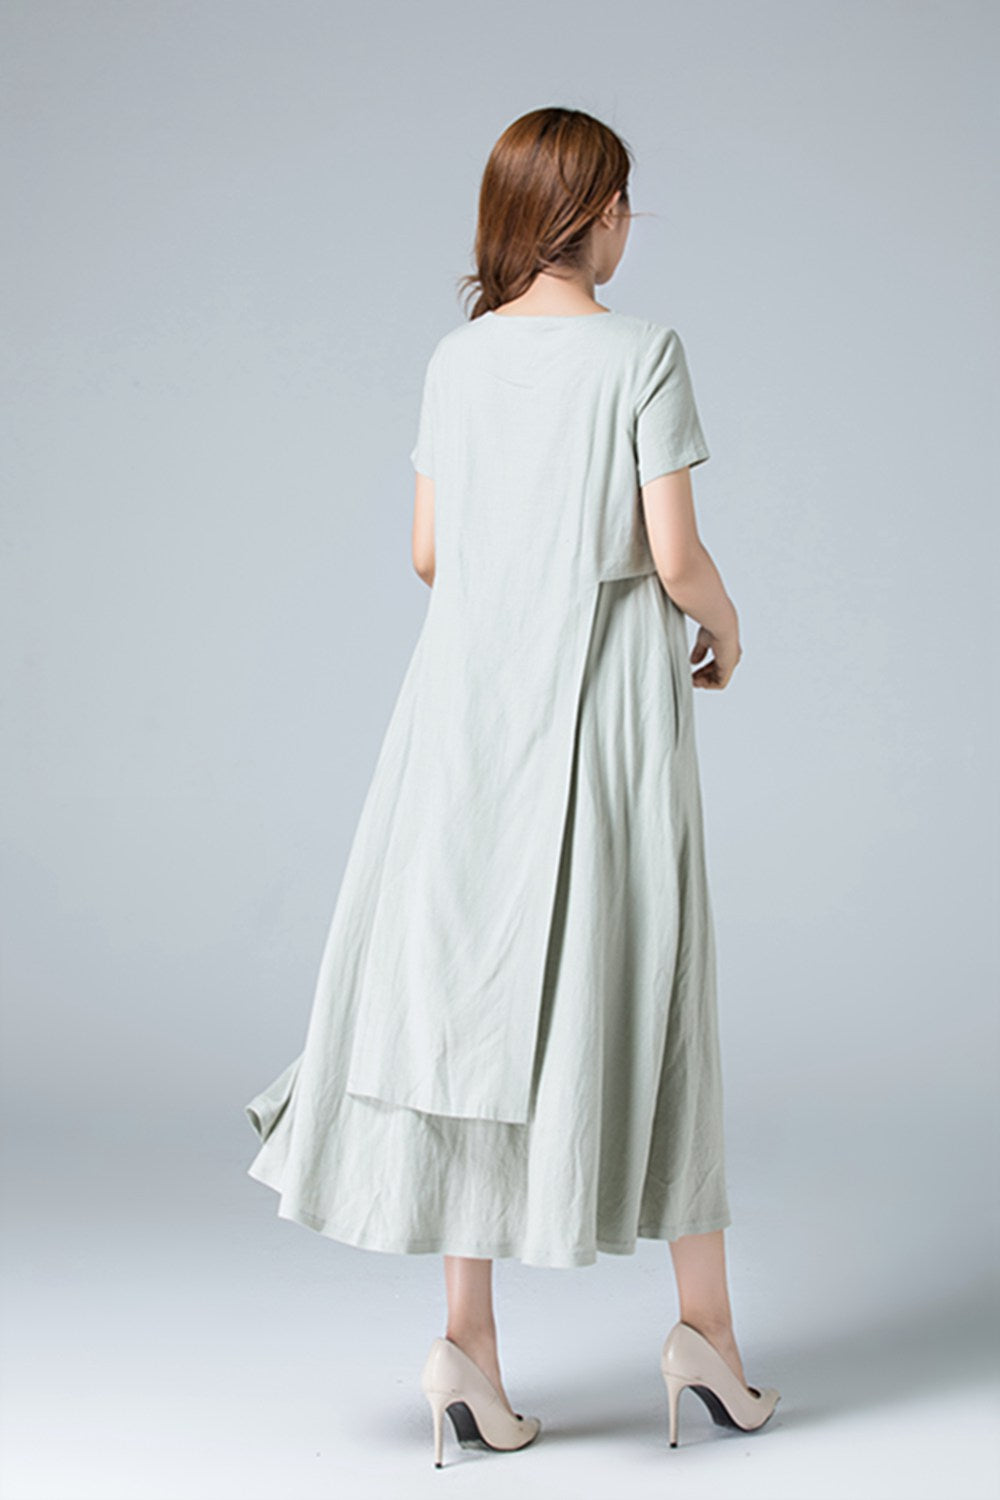 Plain linen dress with irregular folds 1787